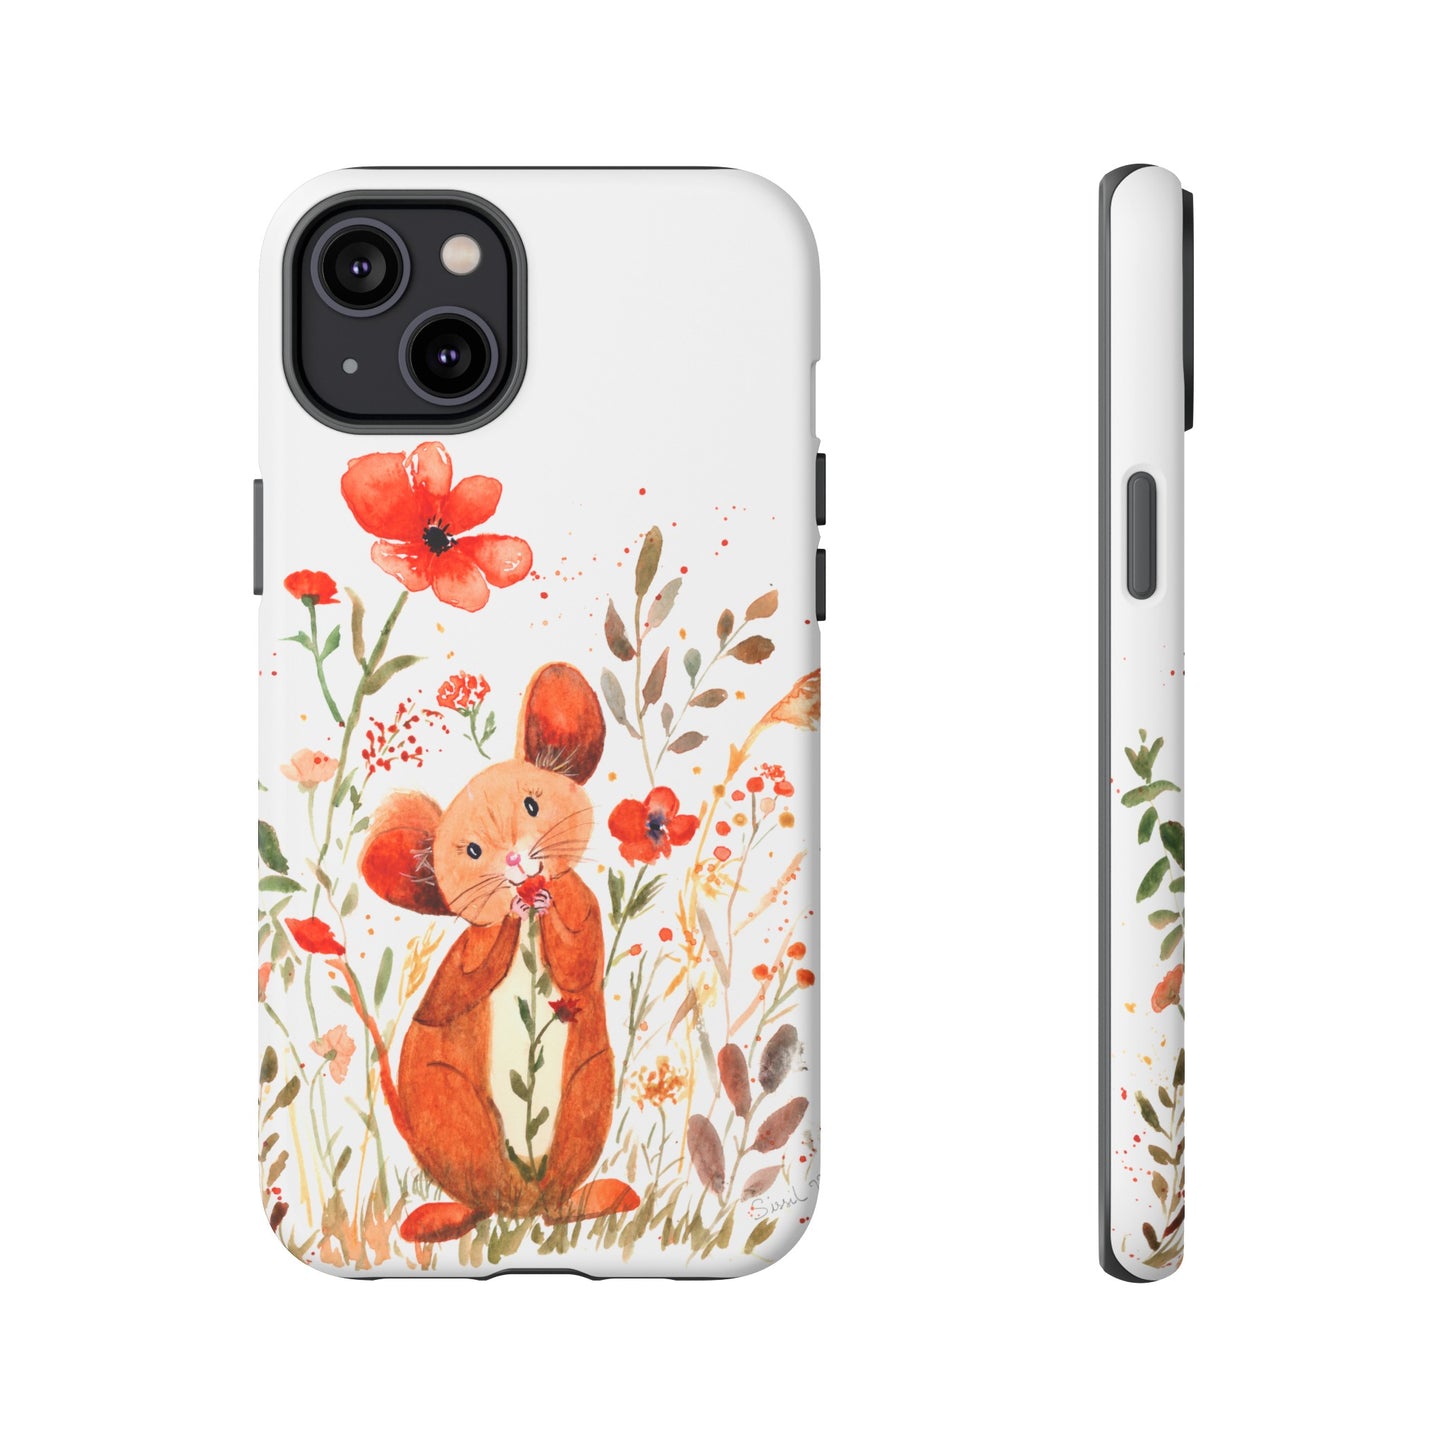 Coque téléphone robuste et résistante aux chocs  : Petite souris au milieu de fleurs